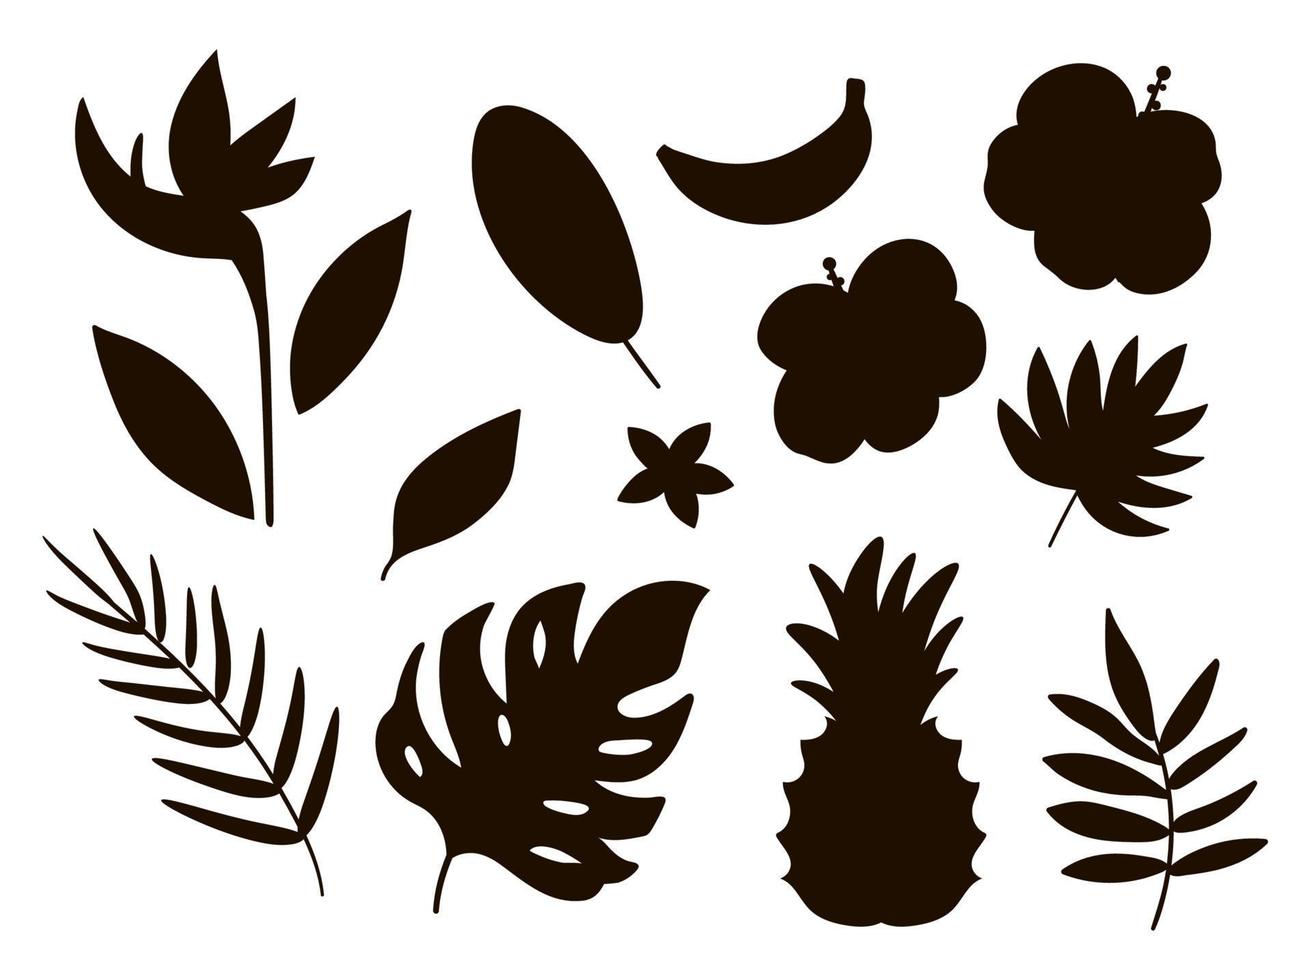 silhouettes vectorielles de fruits tropicaux, de fleurs et de feuilles. feuillage de la jungle et illustration noire florale. ombres de plantes exotiques plates dessinées à la main isolées sur fond blanc. conception de timbre de verdure d'été vecteur